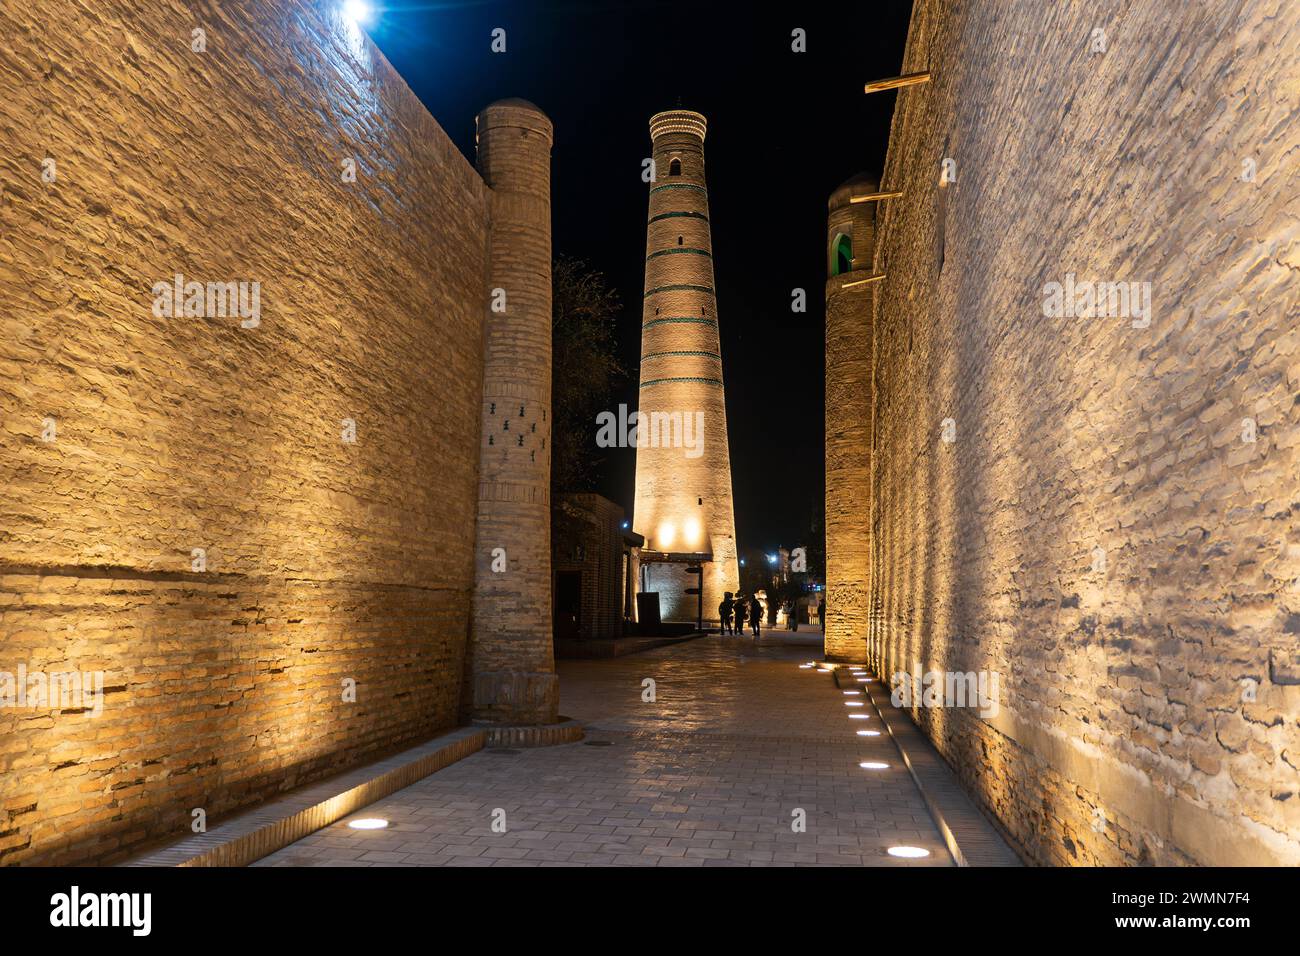 Minaret de la mosquée Juma à Khiva la nuit. Ouzbékistan. Une rue vide d'une ancienne ville médiévale Itchan Kala, Khiva, région de Khorezm, Ouzbékistan Banque D'Images